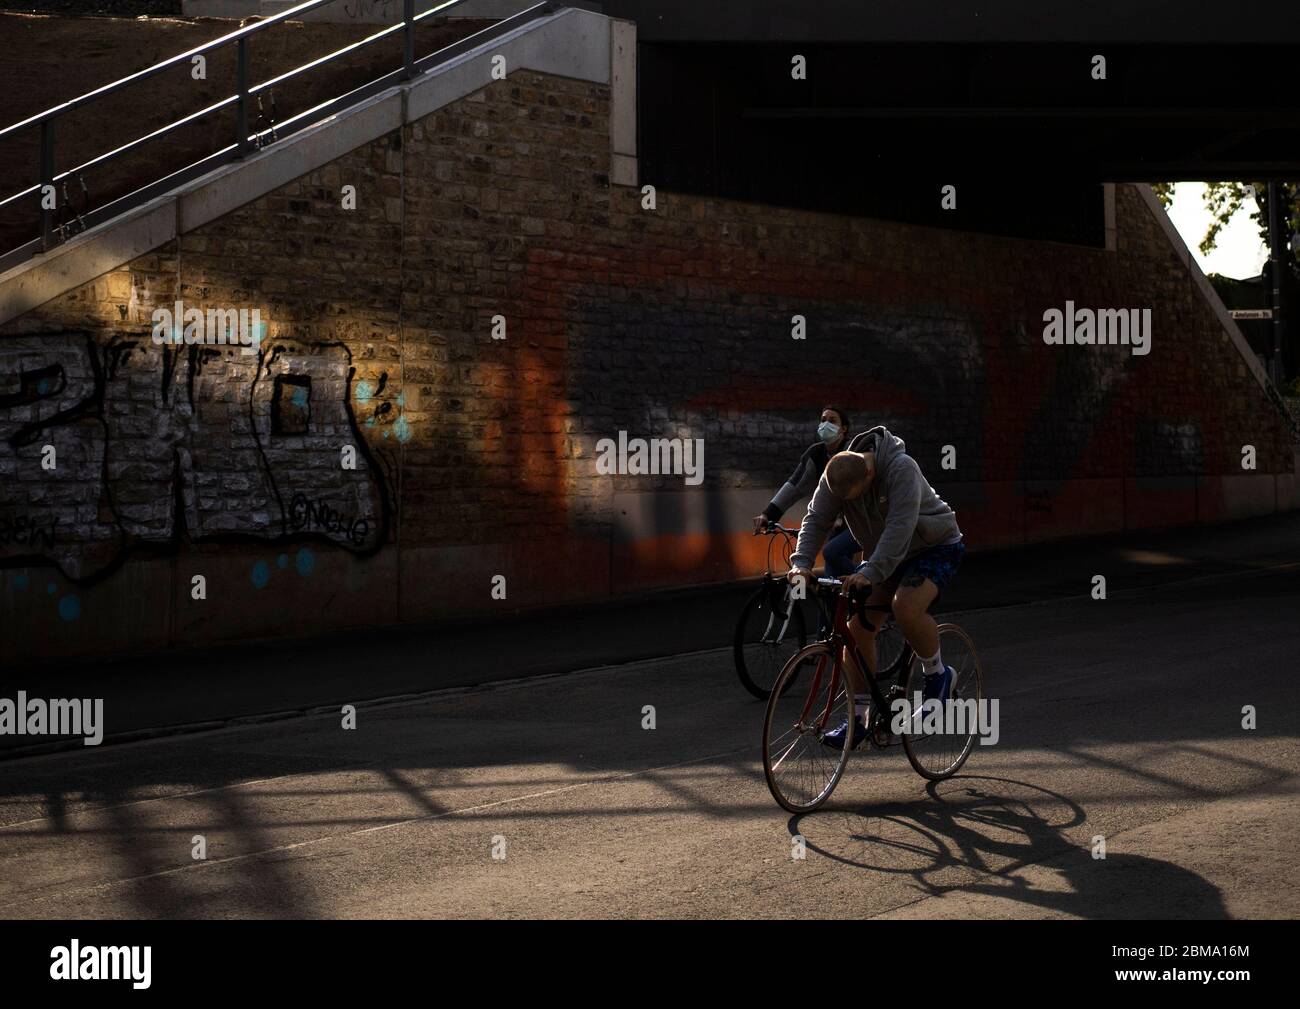 Kšln, Eifelwall, 07.05.2020: Lichtblick, Lichtreflexionen unter einer dunklen BrŸcke, eine Frau mit Mundschutz auf einem Fahrrad, Stock Photo